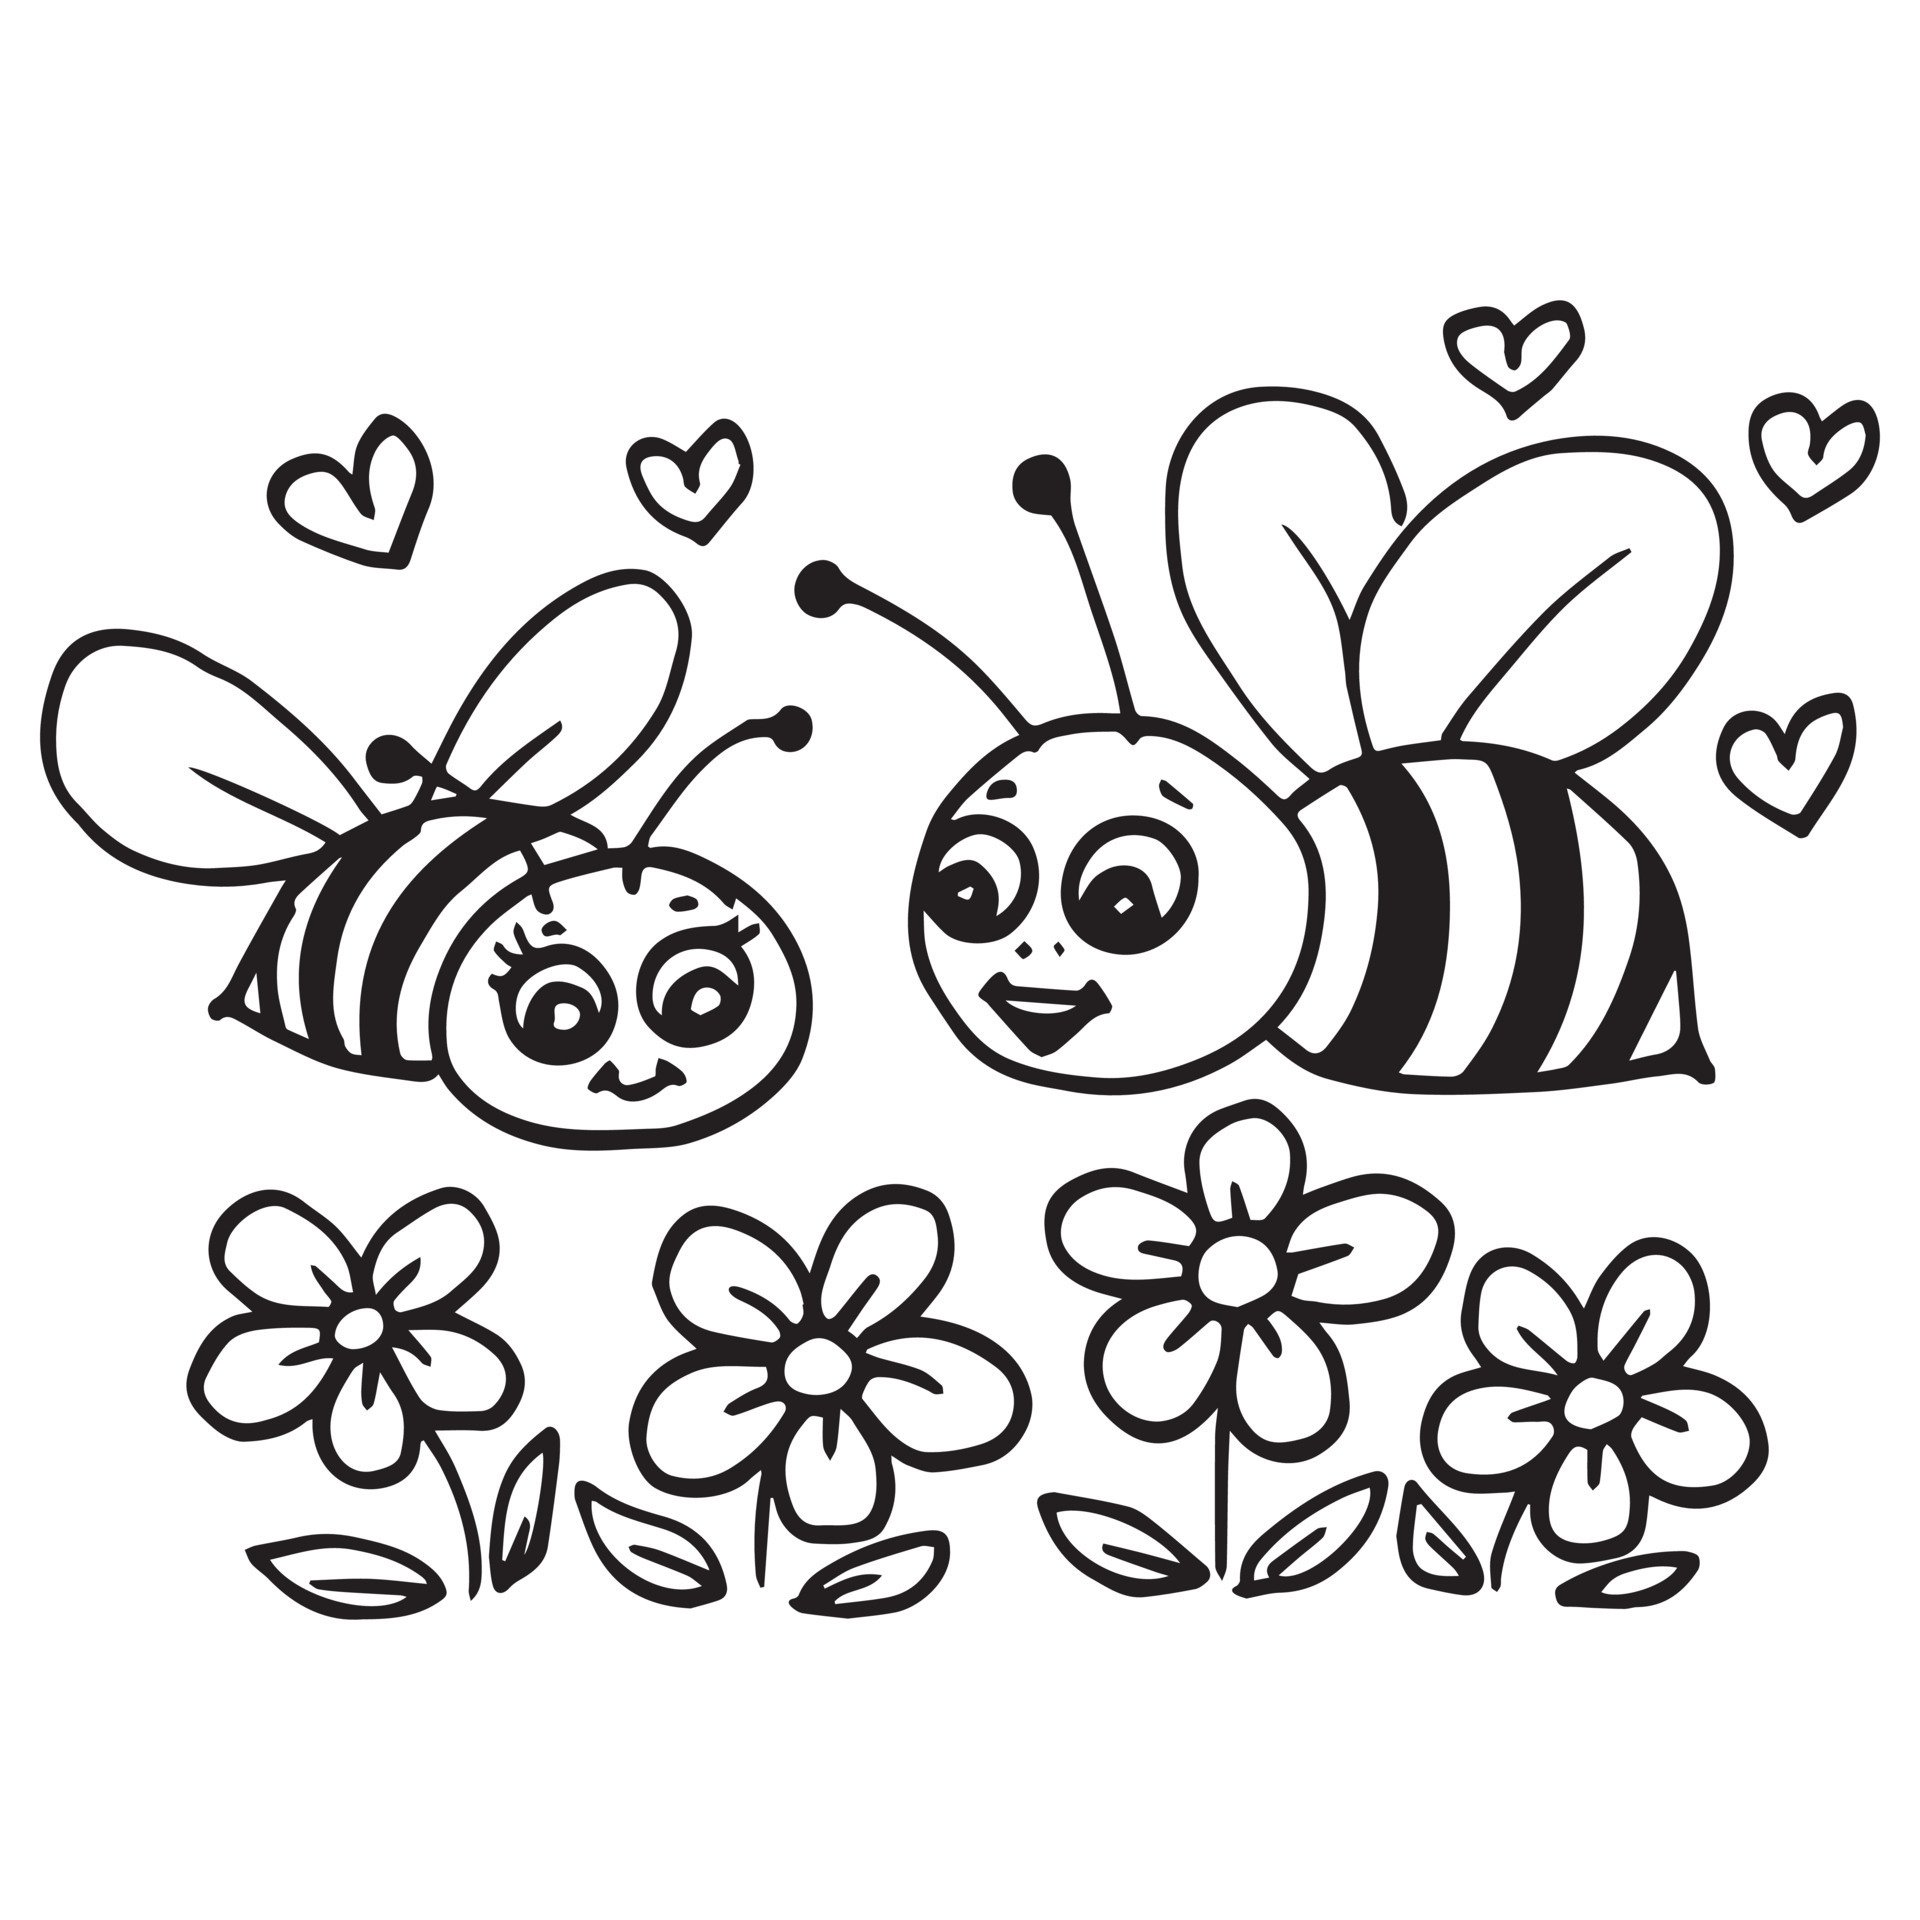 Пчелка раскраска распечатать. Раскраска пчёлка для детей. Пчела раскраска для малышей. Пчела раскраска для детей. Пчелка раскраска для малышей.